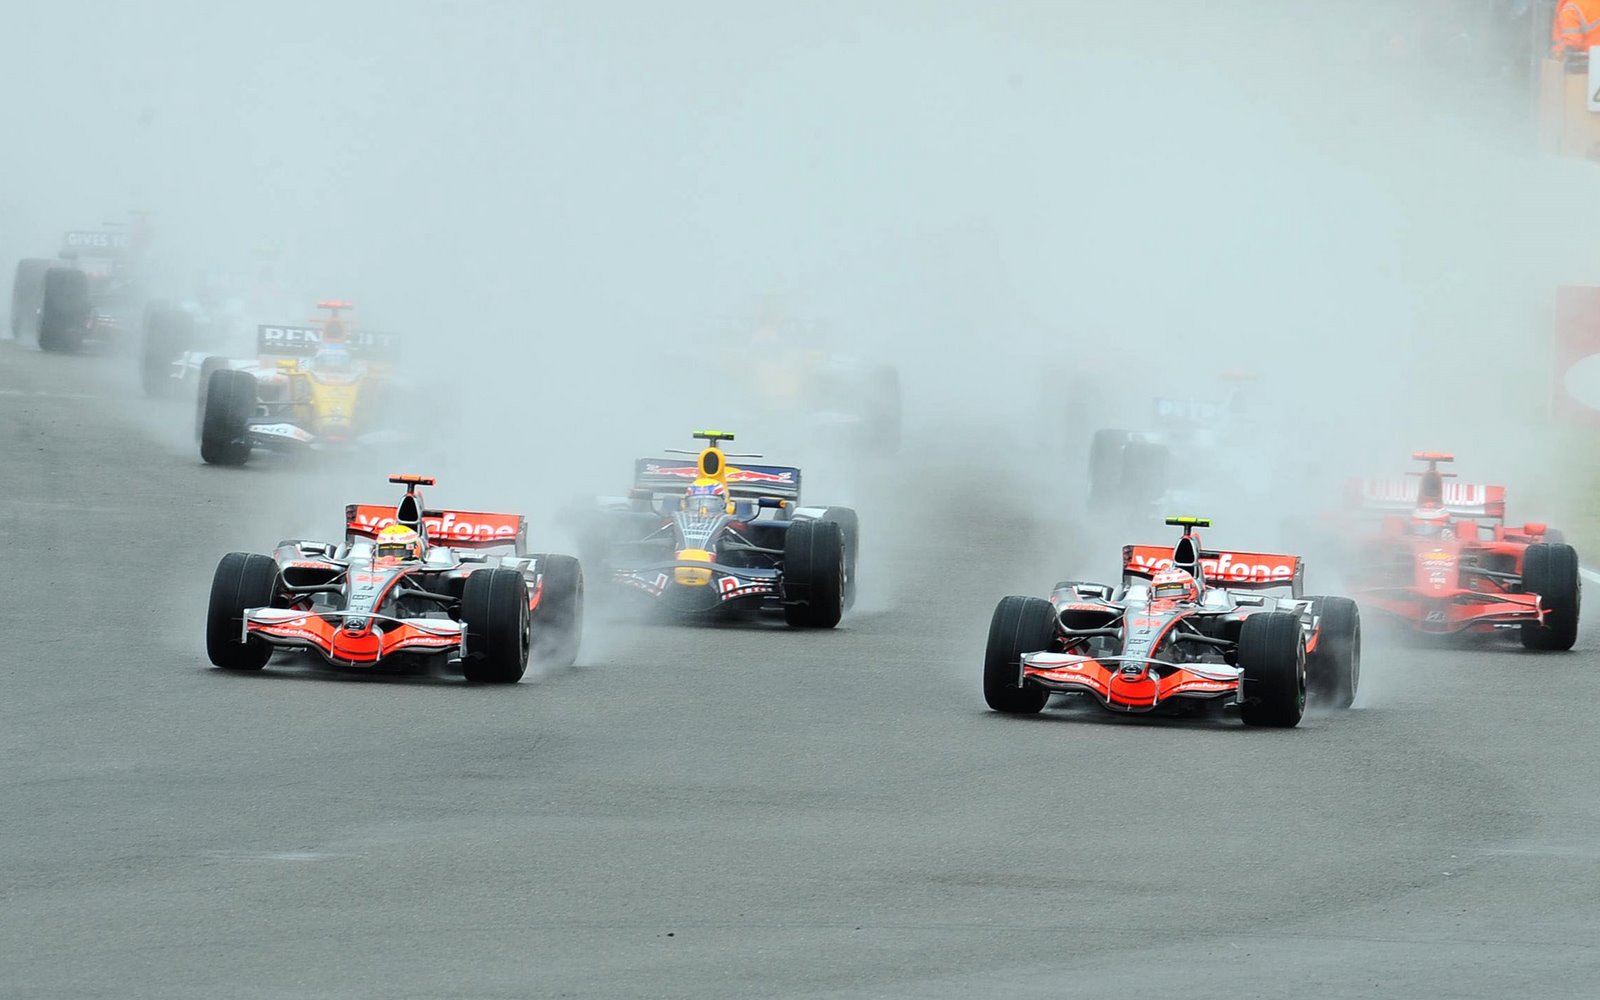 [Heikki+Kovalainen+Lewis+Hamilton+McLaren+Mercedes+British+Grand+Prix,+Silverstone+Sunday+Race+73.jpg]